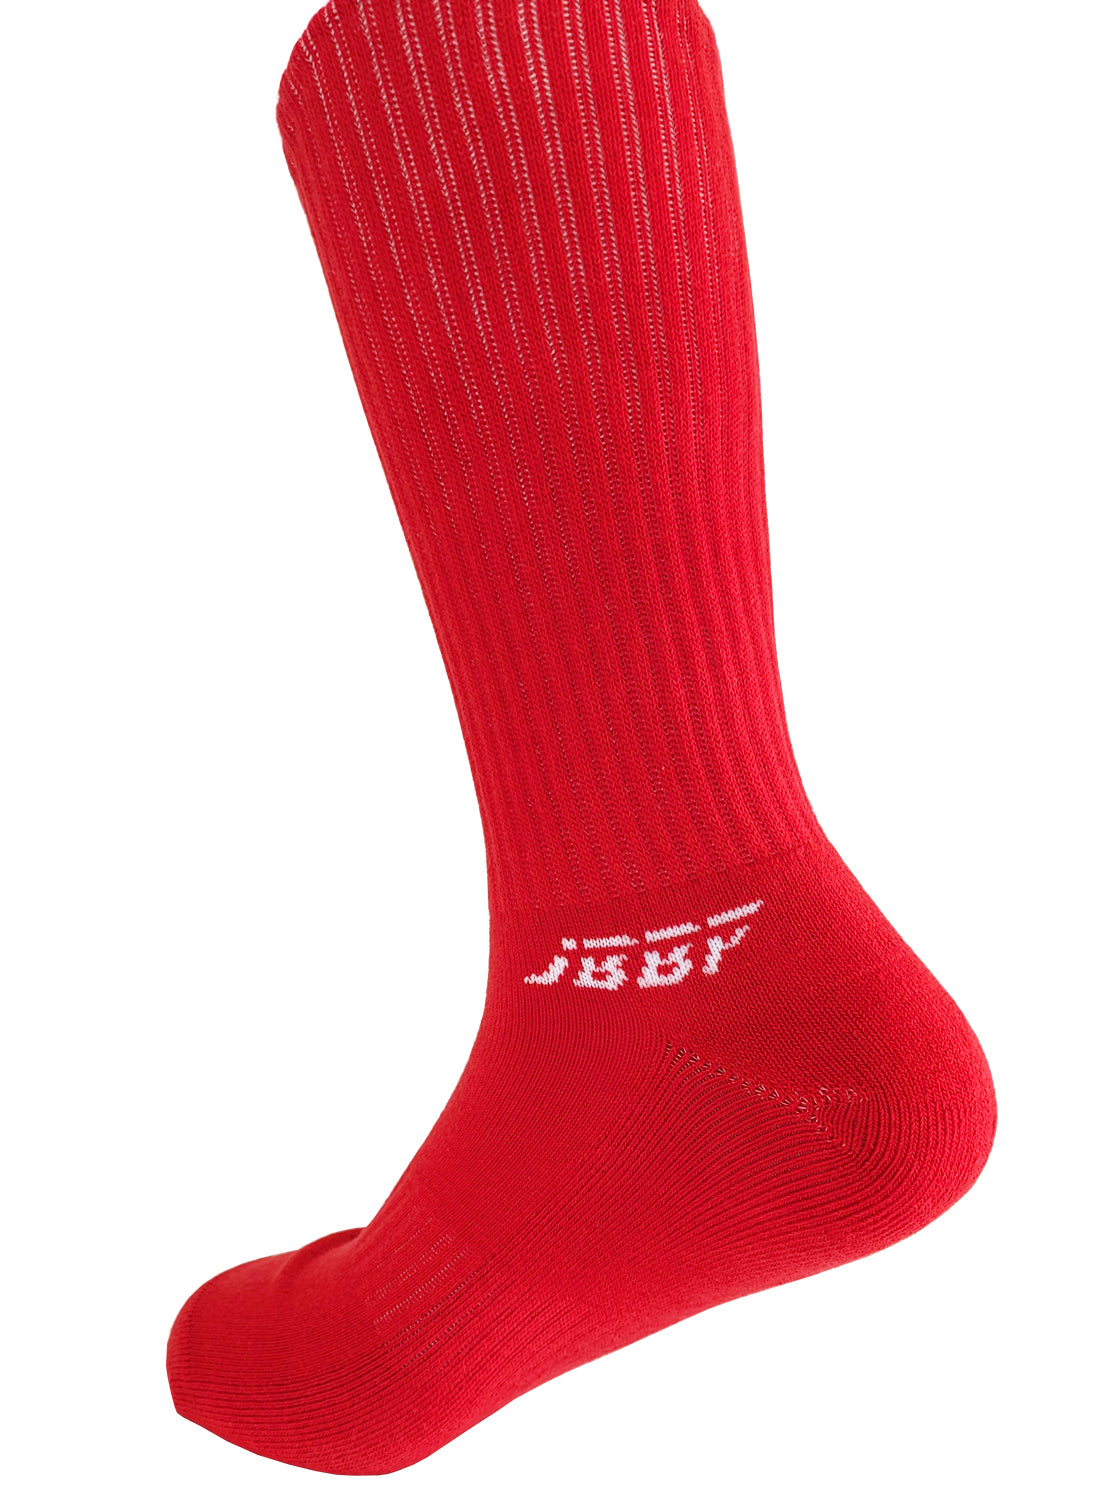 JBBF SOCKS - 赤ロング丈